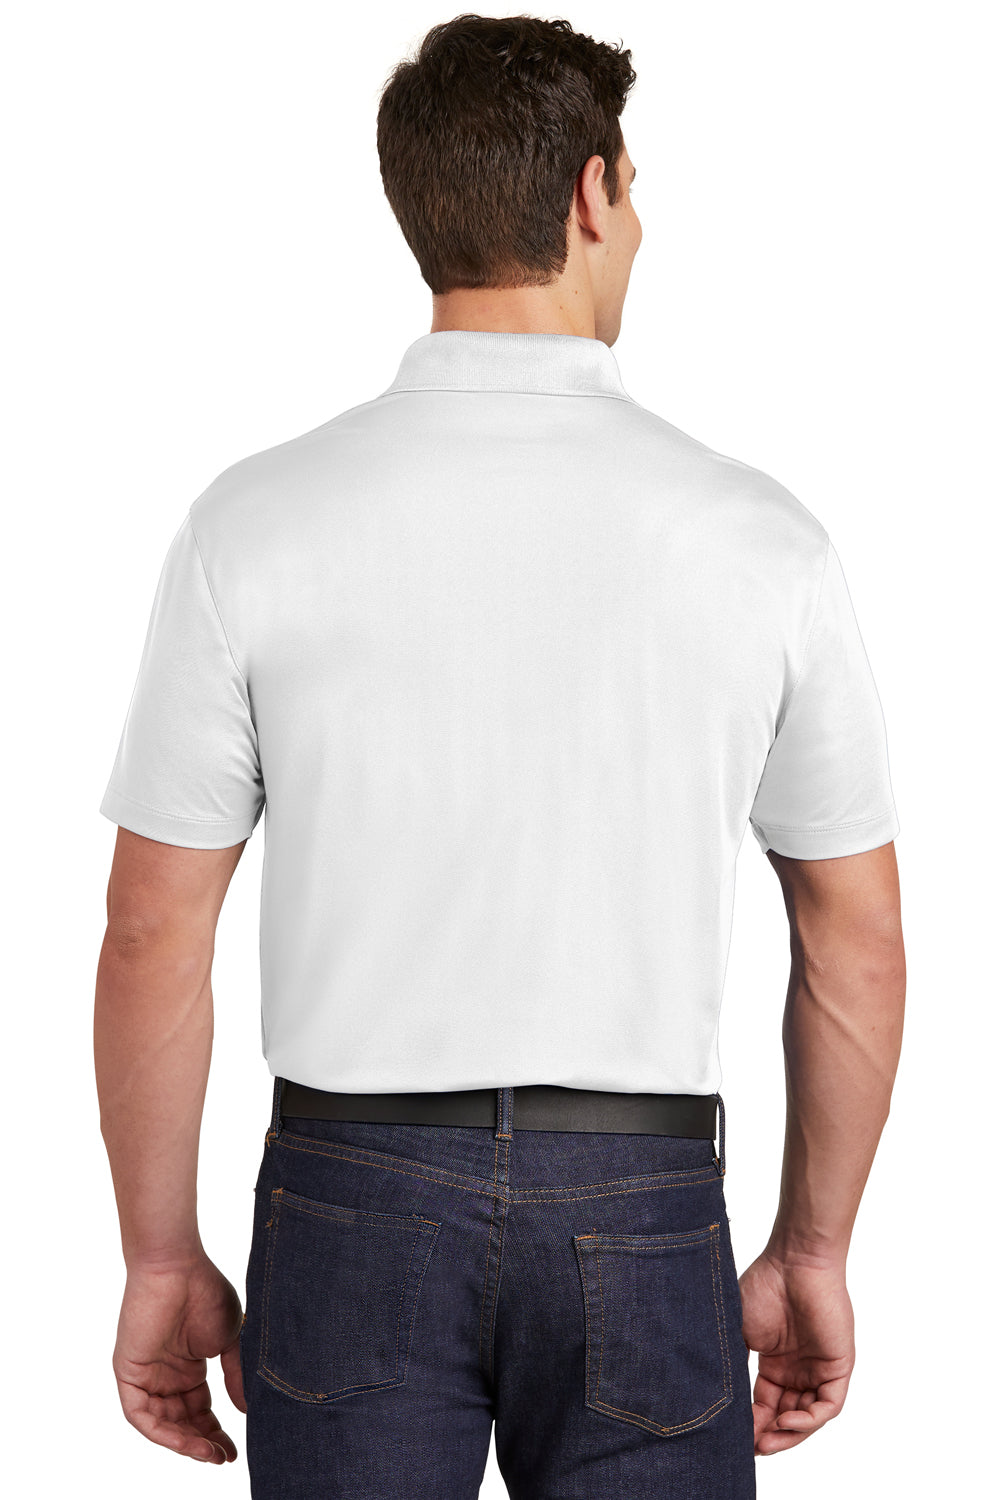 Sport-Tek ST651 Mens Sport-Wick Moisture Wicking Short Sleeve Polo Shirt w/ Pocket White Back